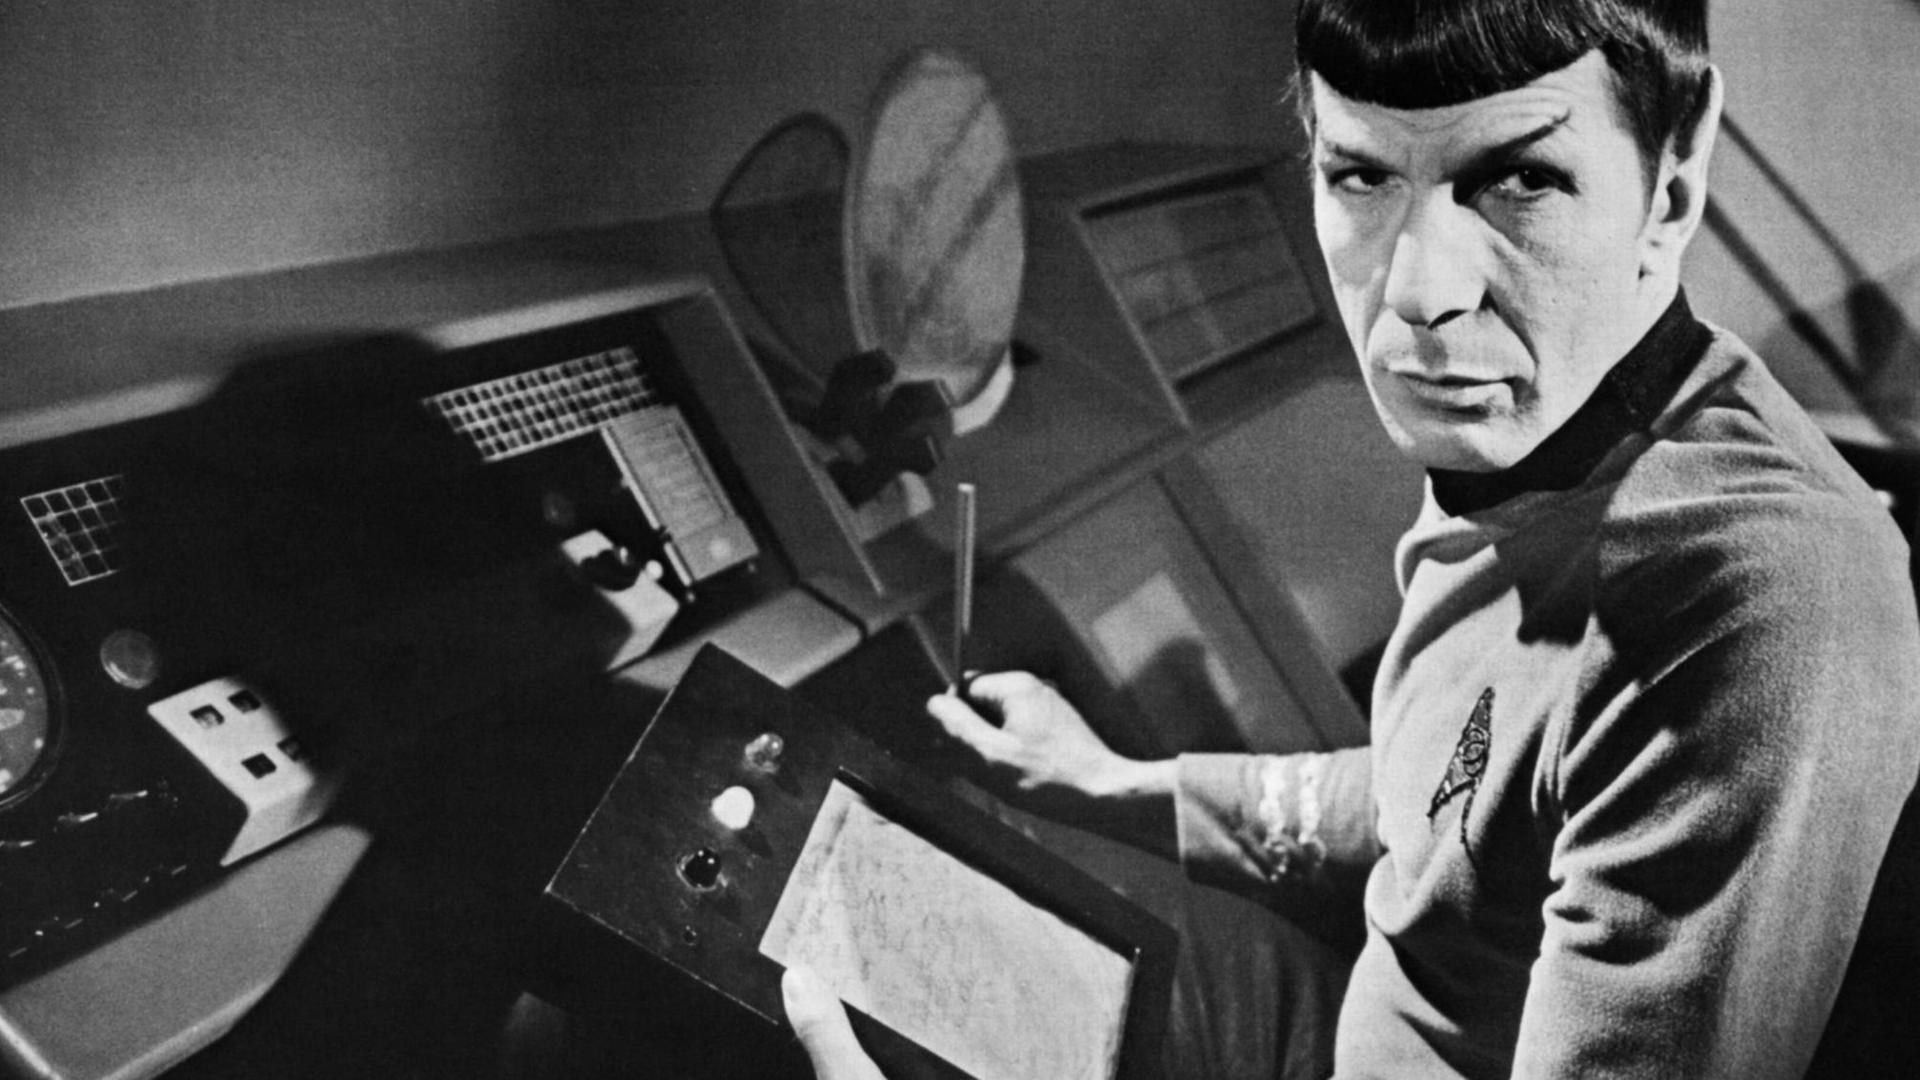 Leonard Nimoy in seiner Rolle als Spock mit einem Taschencomputer in der Hand, der unseren heutigen Tablets ähnelt.